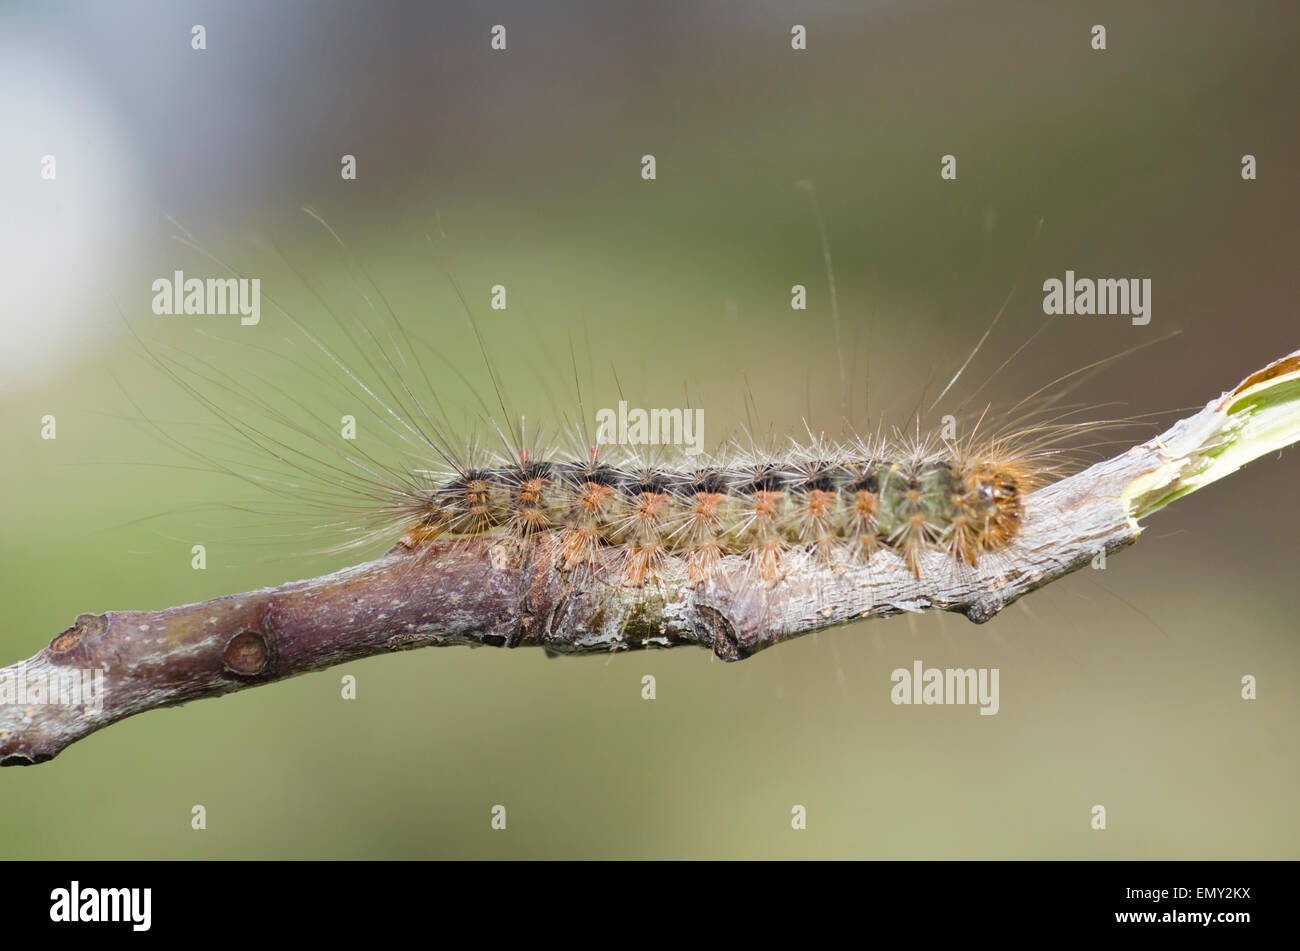 https://c8.alamy.com/comp/EMY2KX/white-cedar-moth-caterpillar-EMY2KX.jpg